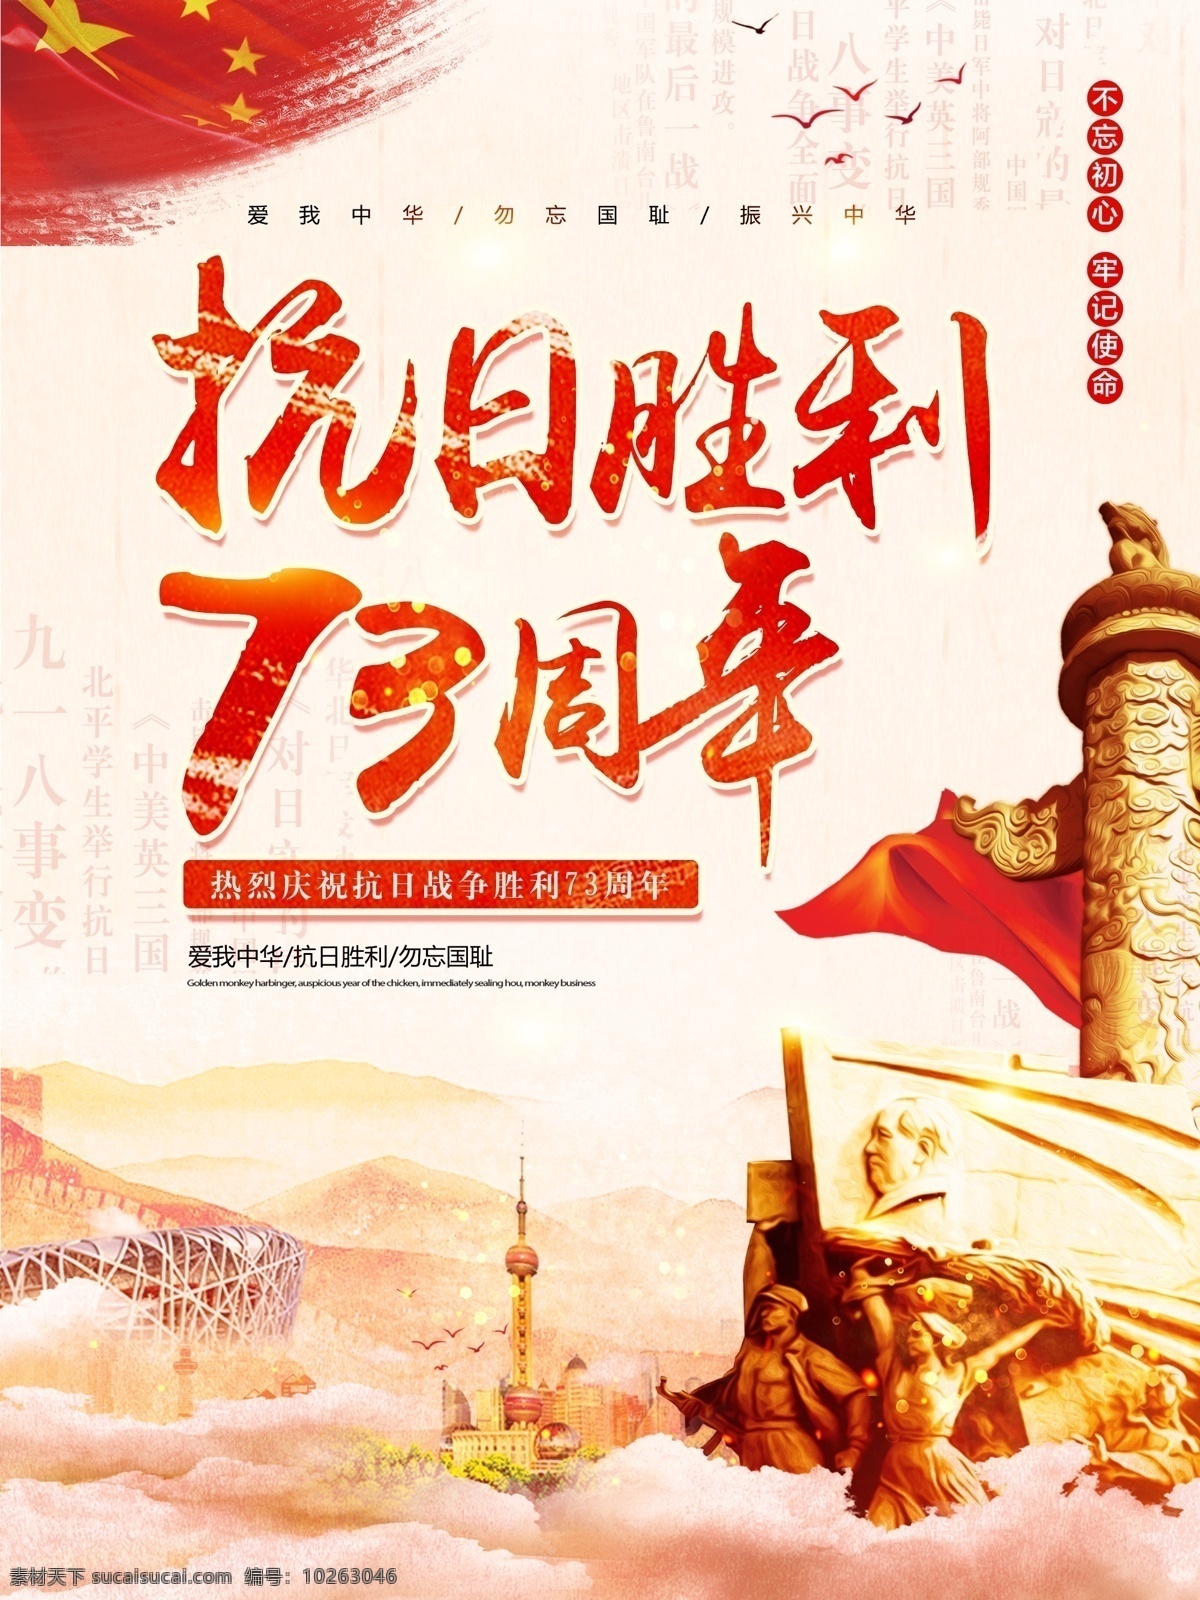 红色 中 国风 党建 抗日 胜利 周年 海报 中国风 国旗 华表 抗日战争 抗日胜利